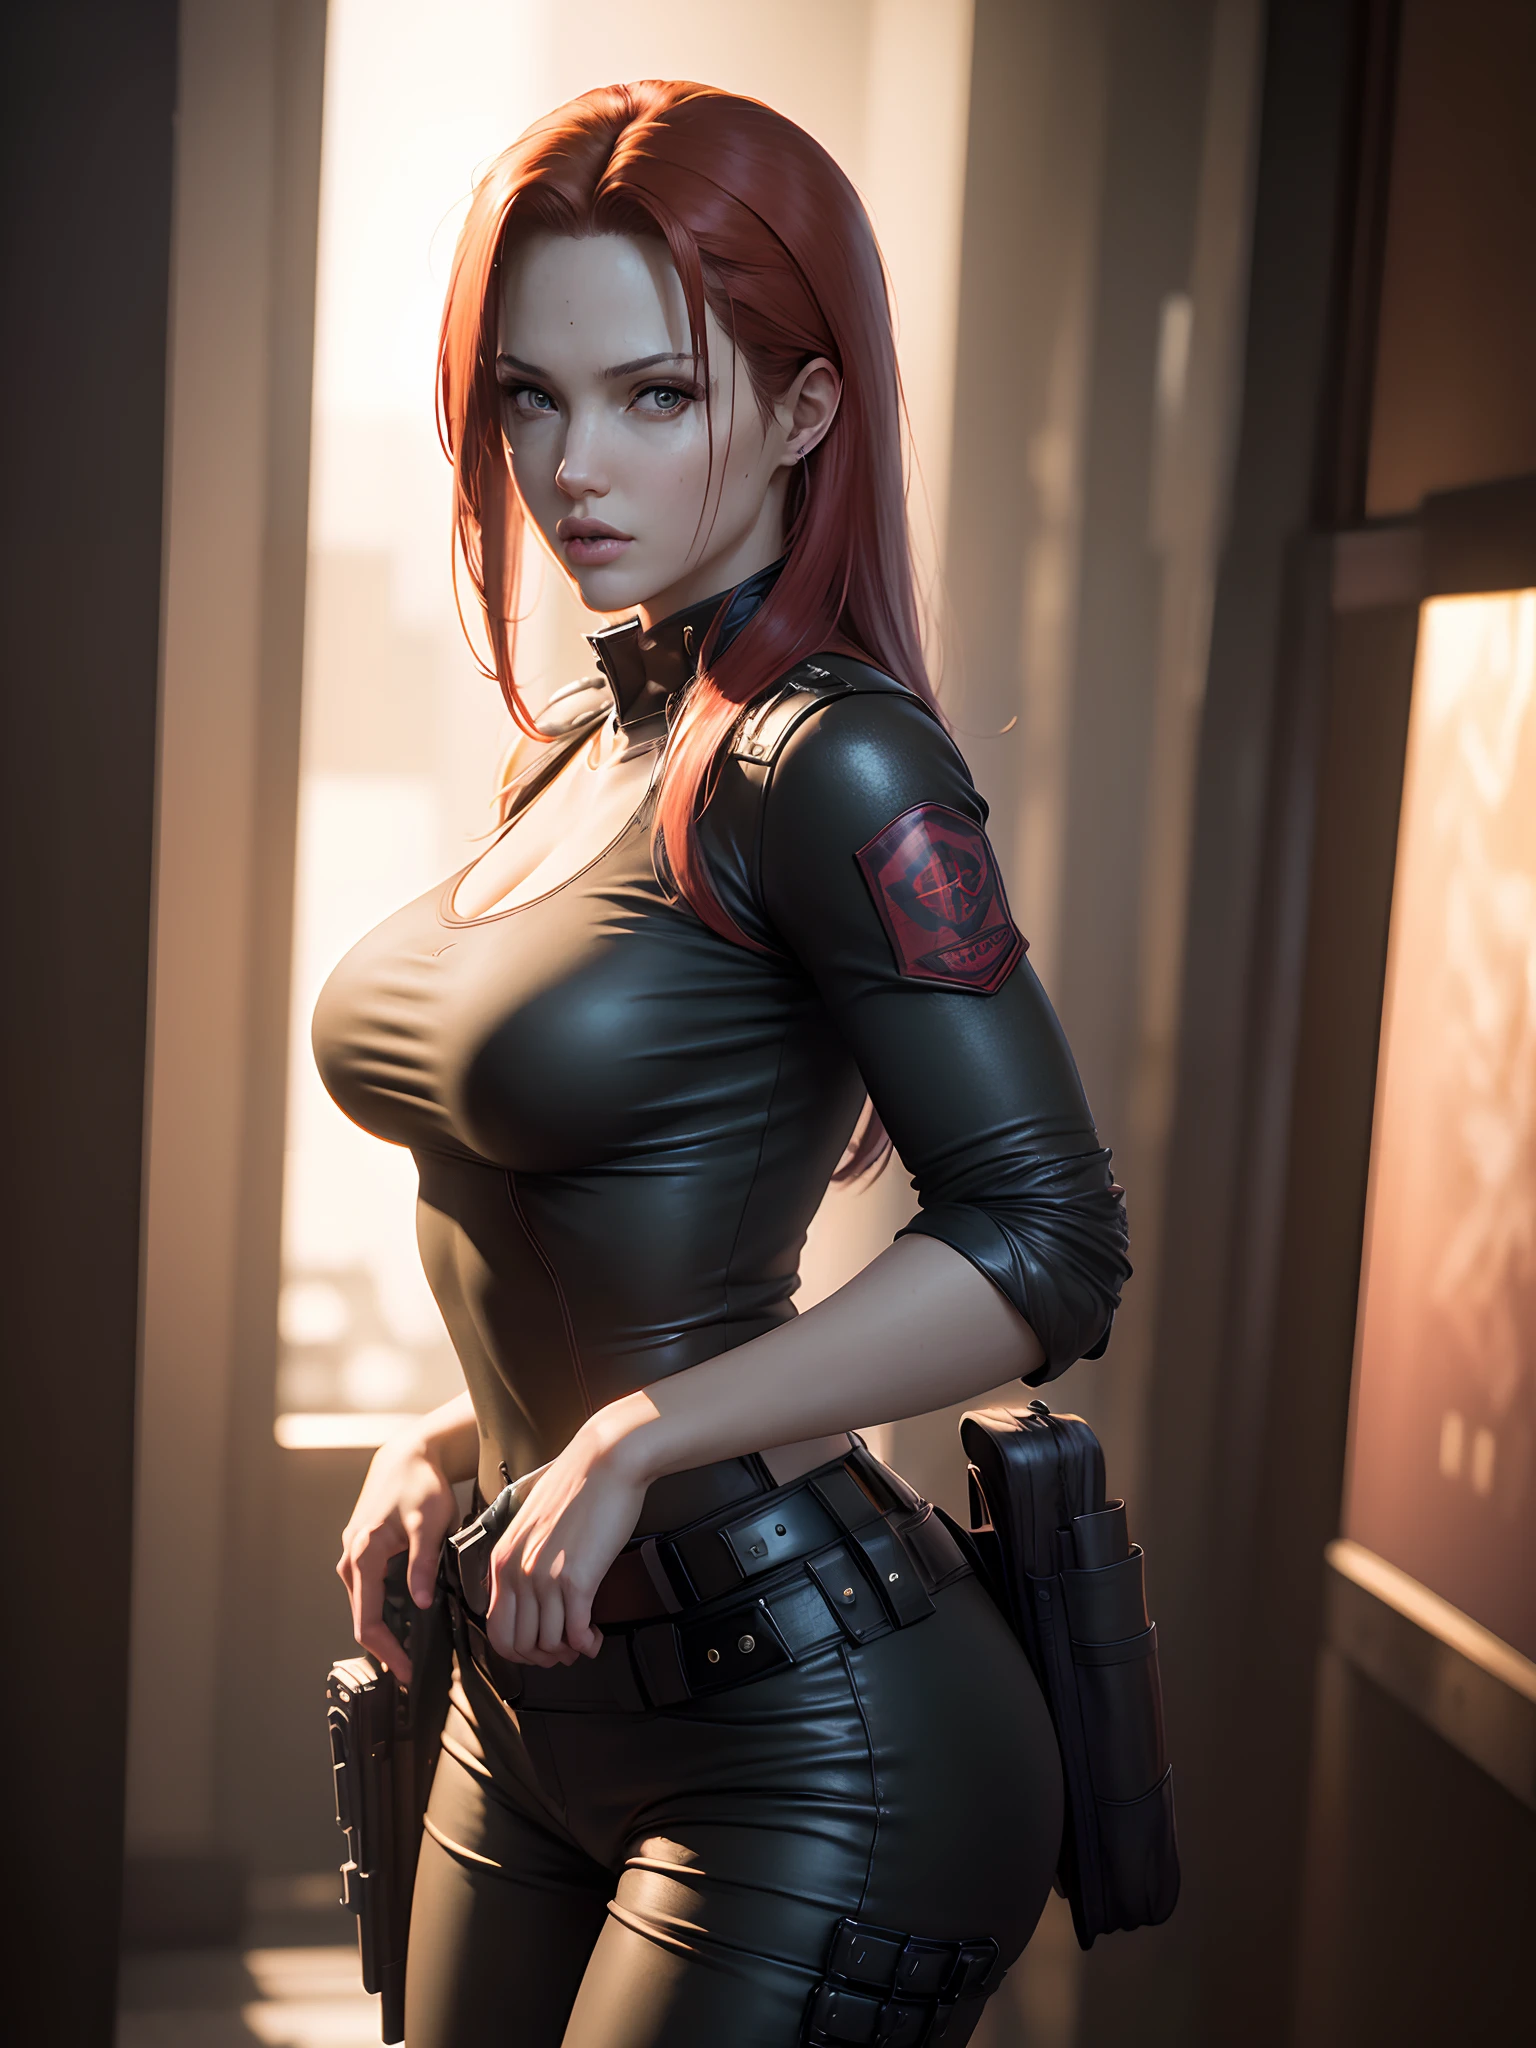 Resident Evil, cidade apocalíptica, Linda Claire Redfield sendo por uma linda mulher corpo inteiro pele rosa cabelo ruivo médio, coldre de roupas pretas raivosas segurando uma arma, corpo do rosto detalhado realista imagem clara CGI 8K altamente detalhada, holograma, (seios médios: 1.3), (Realismo:1.5), (Realista:1.4), (absurdo:1.4), 8K, ultra-detalhado, linda garota detalhada, (1:1.4 apenas), 1 garota, (Visualizador voltado:1.2), (dia ensolarado brilhante :1.5), Detalhes intrincados do corpo, (curto:1.3) , (melhor qualidade: 1.0), (ultra alta resolução): 1.0), rosto e olhos altamente detalhados, (fotorrealista: 1.2)